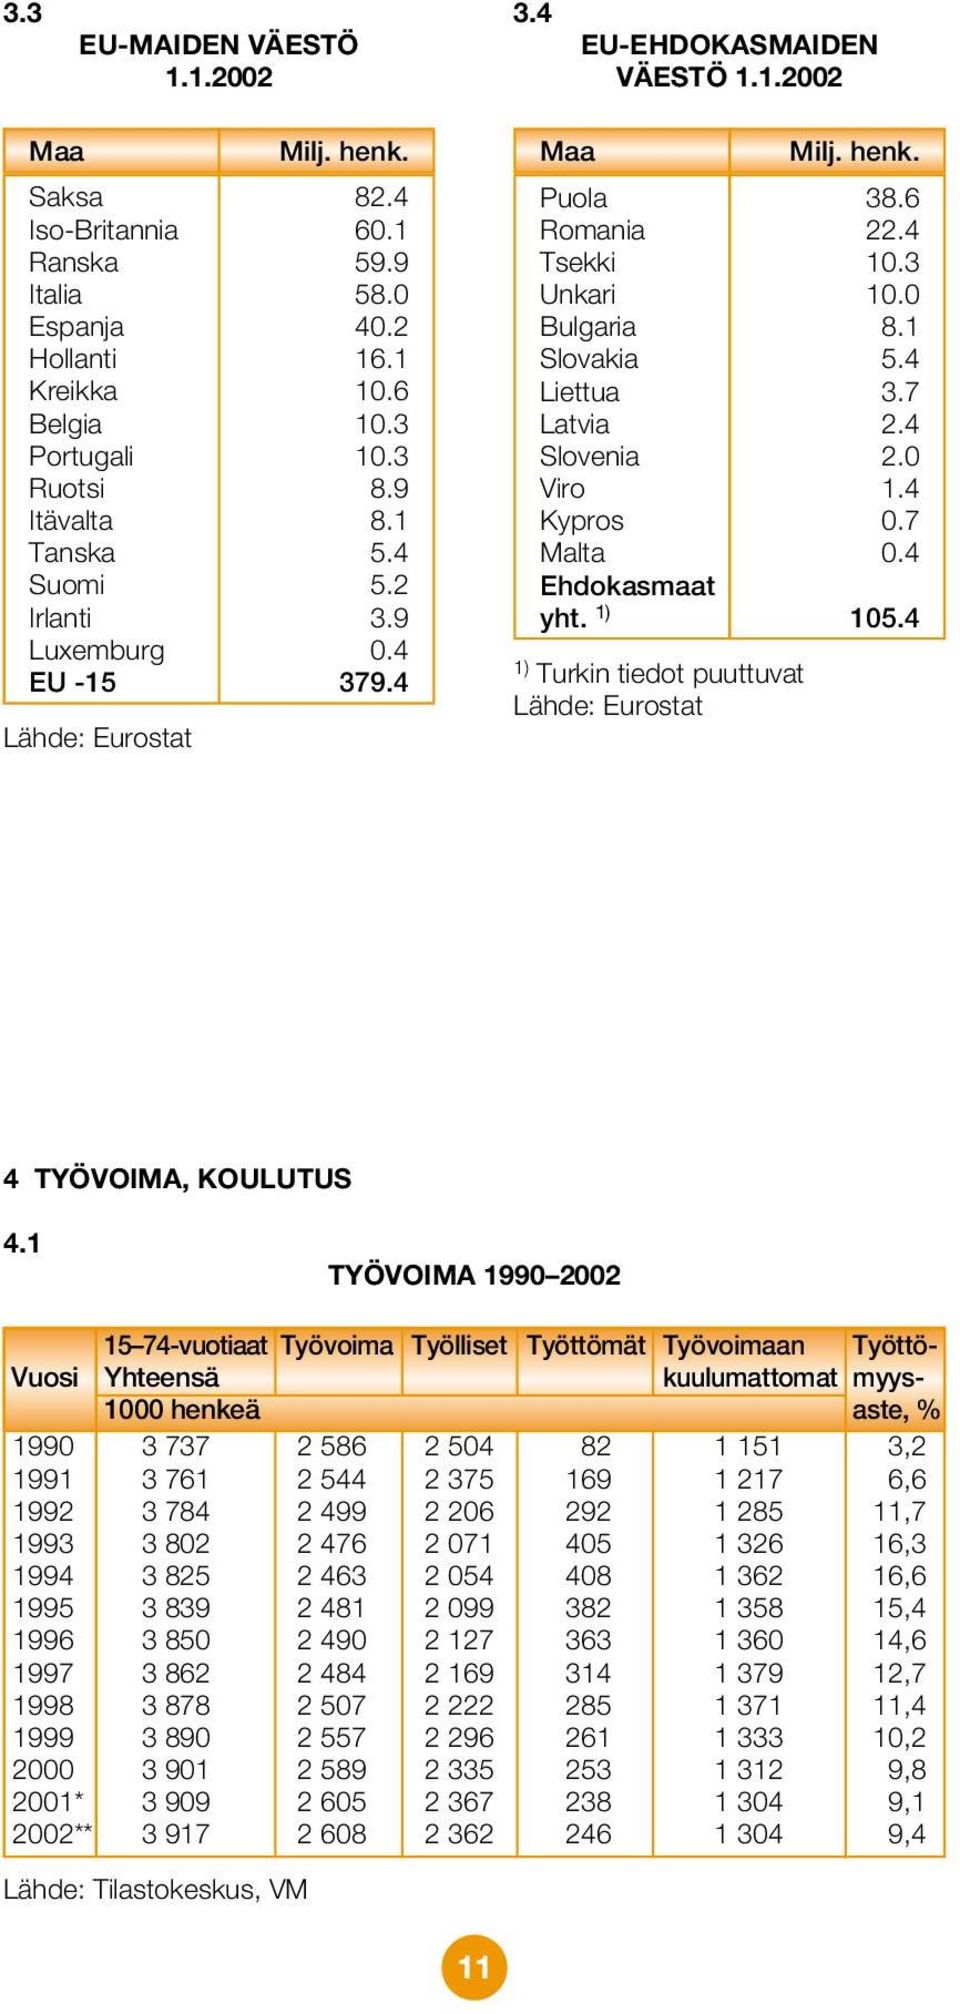 1 Slovakia 5.4 Liettua 3.7 Latvia 2.4 Slovenia 2.0 Viro 1.4 Kypros 0.7 Malta 0.4 Ehdokasmaat yht. 1) 105.4 1) Turkin tiedot puuttuvat Lähde: Eurostat 4 TYÖVOIMA, KOULUTUS 4.